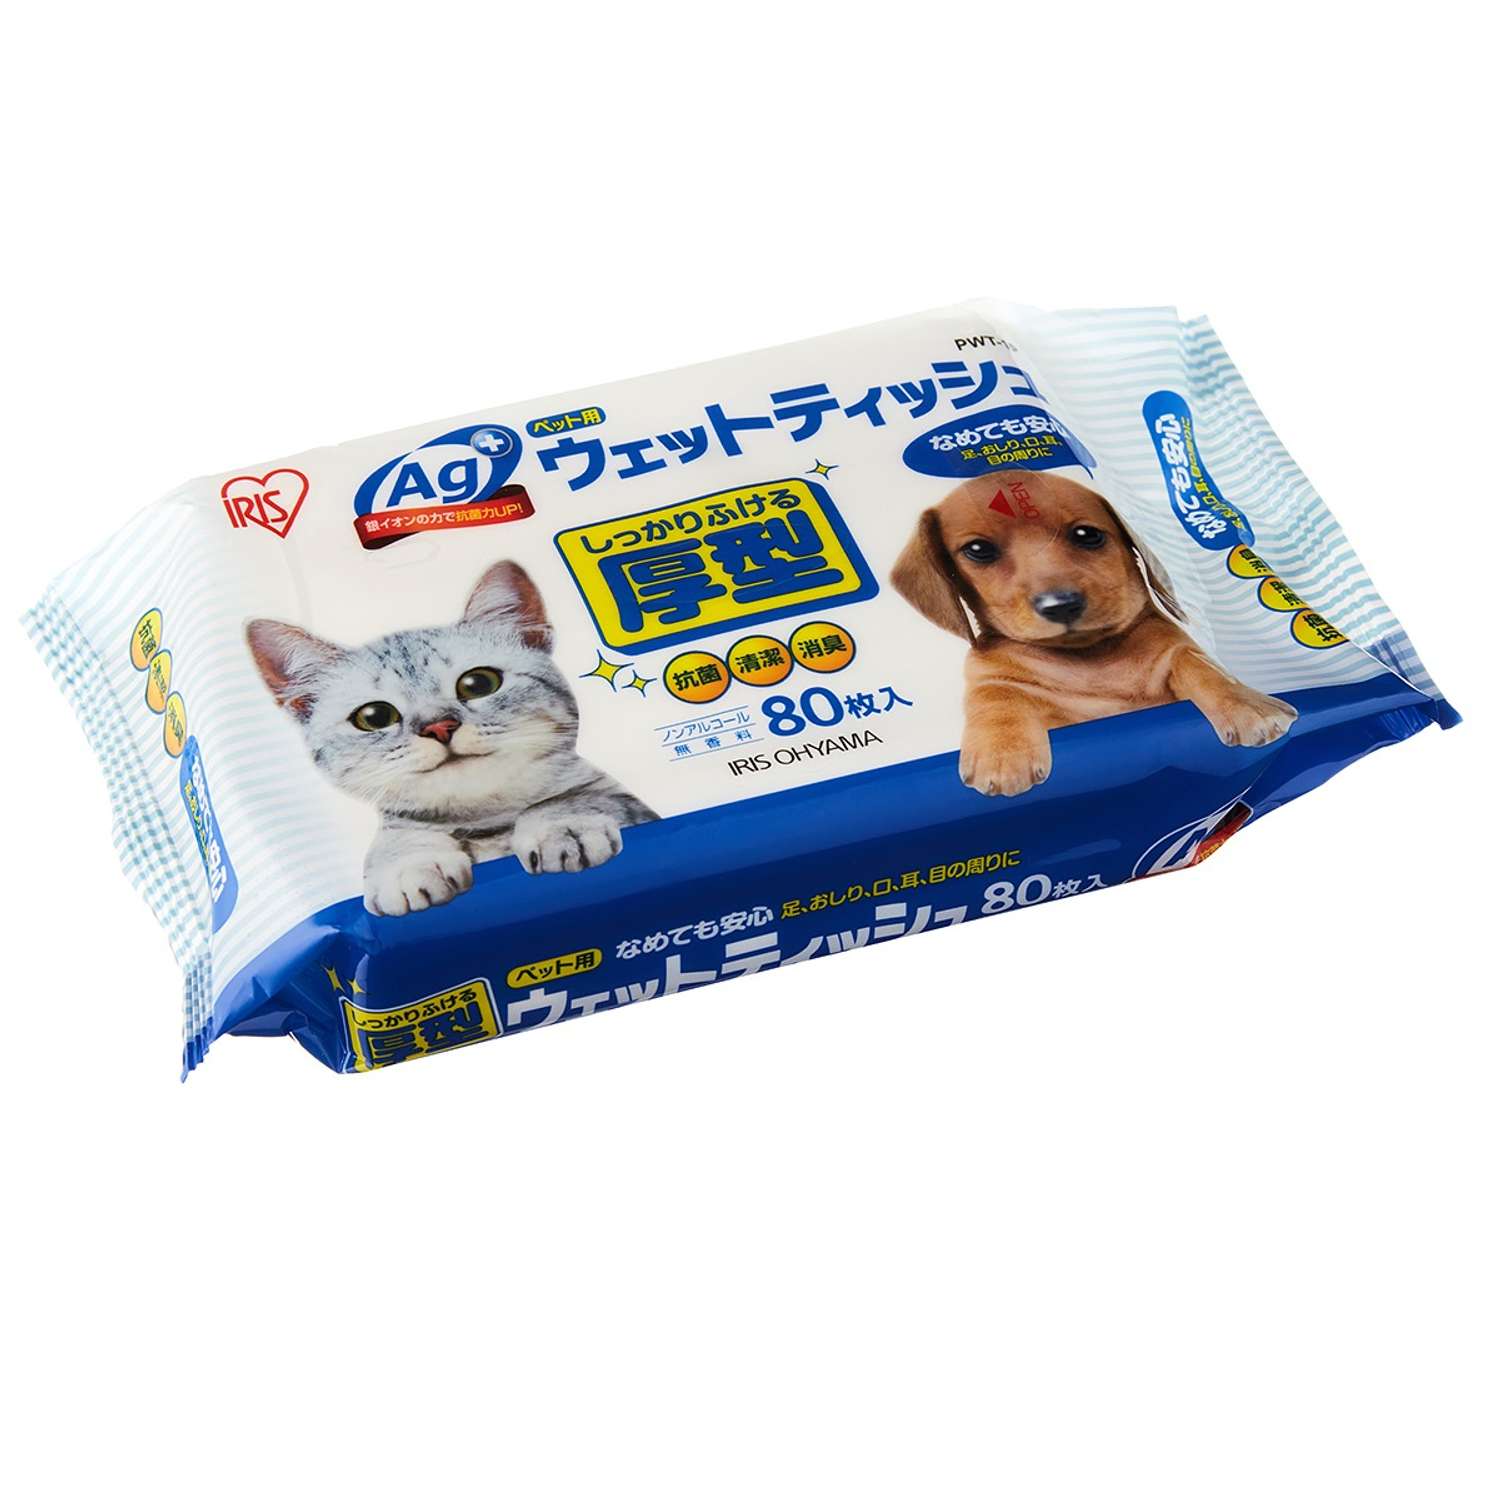 Влажные салфетки IRIS OHYAMA  для ухода за домашними животными. 80шт в упаковке - фото 1